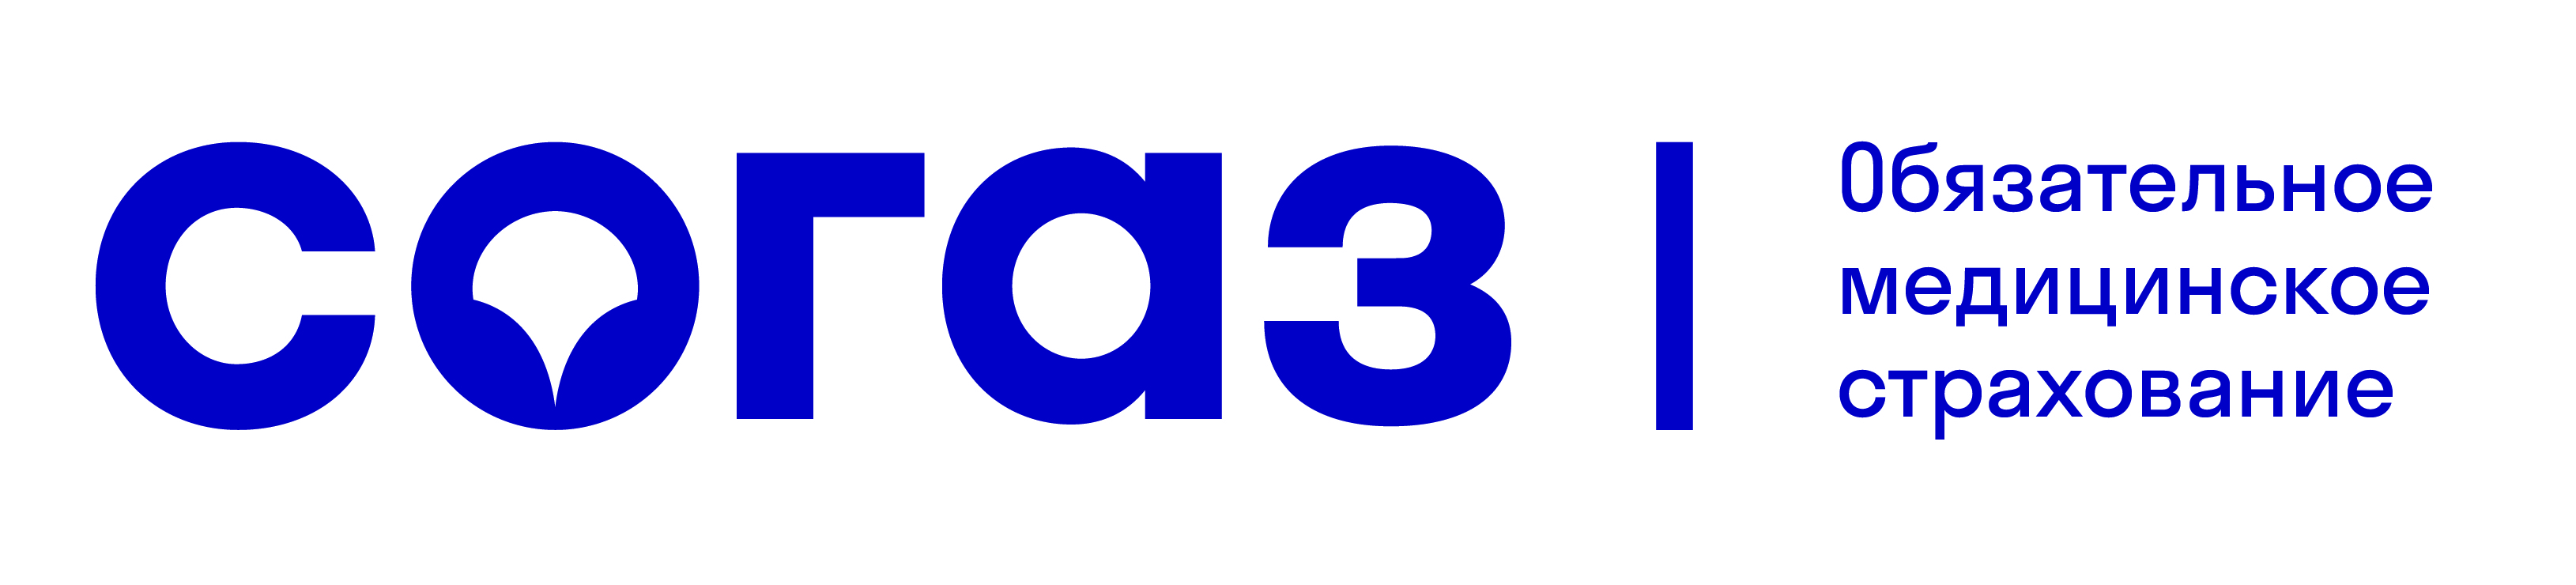 Лого СОГАЗ ОМС 3